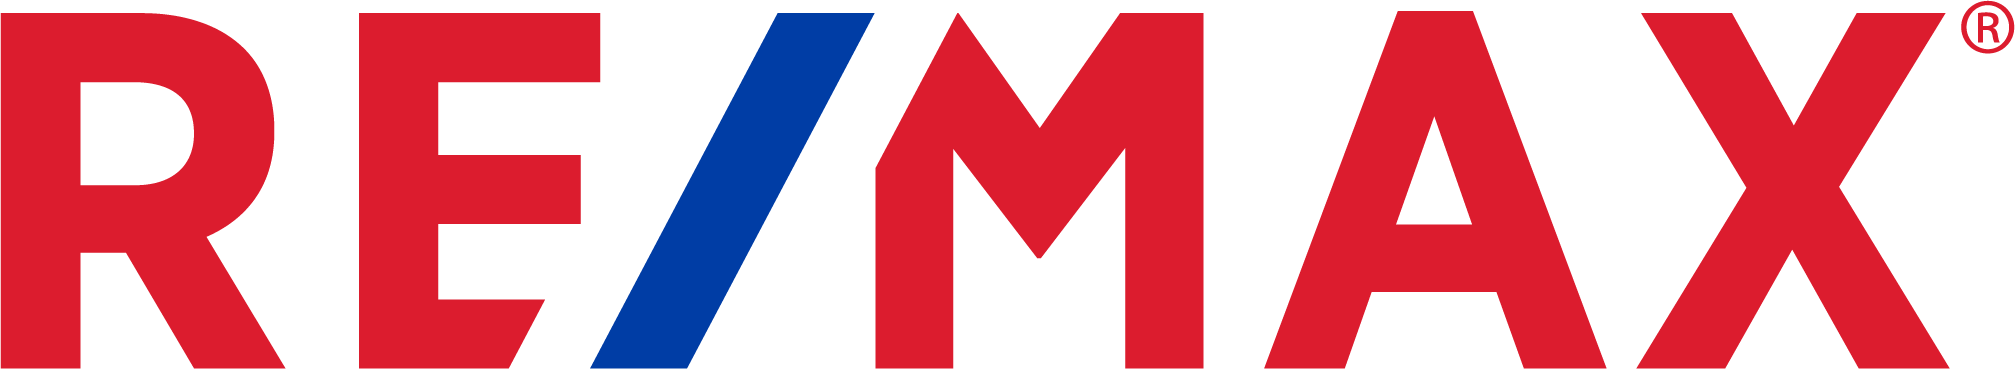 RE/MAX RGB logo